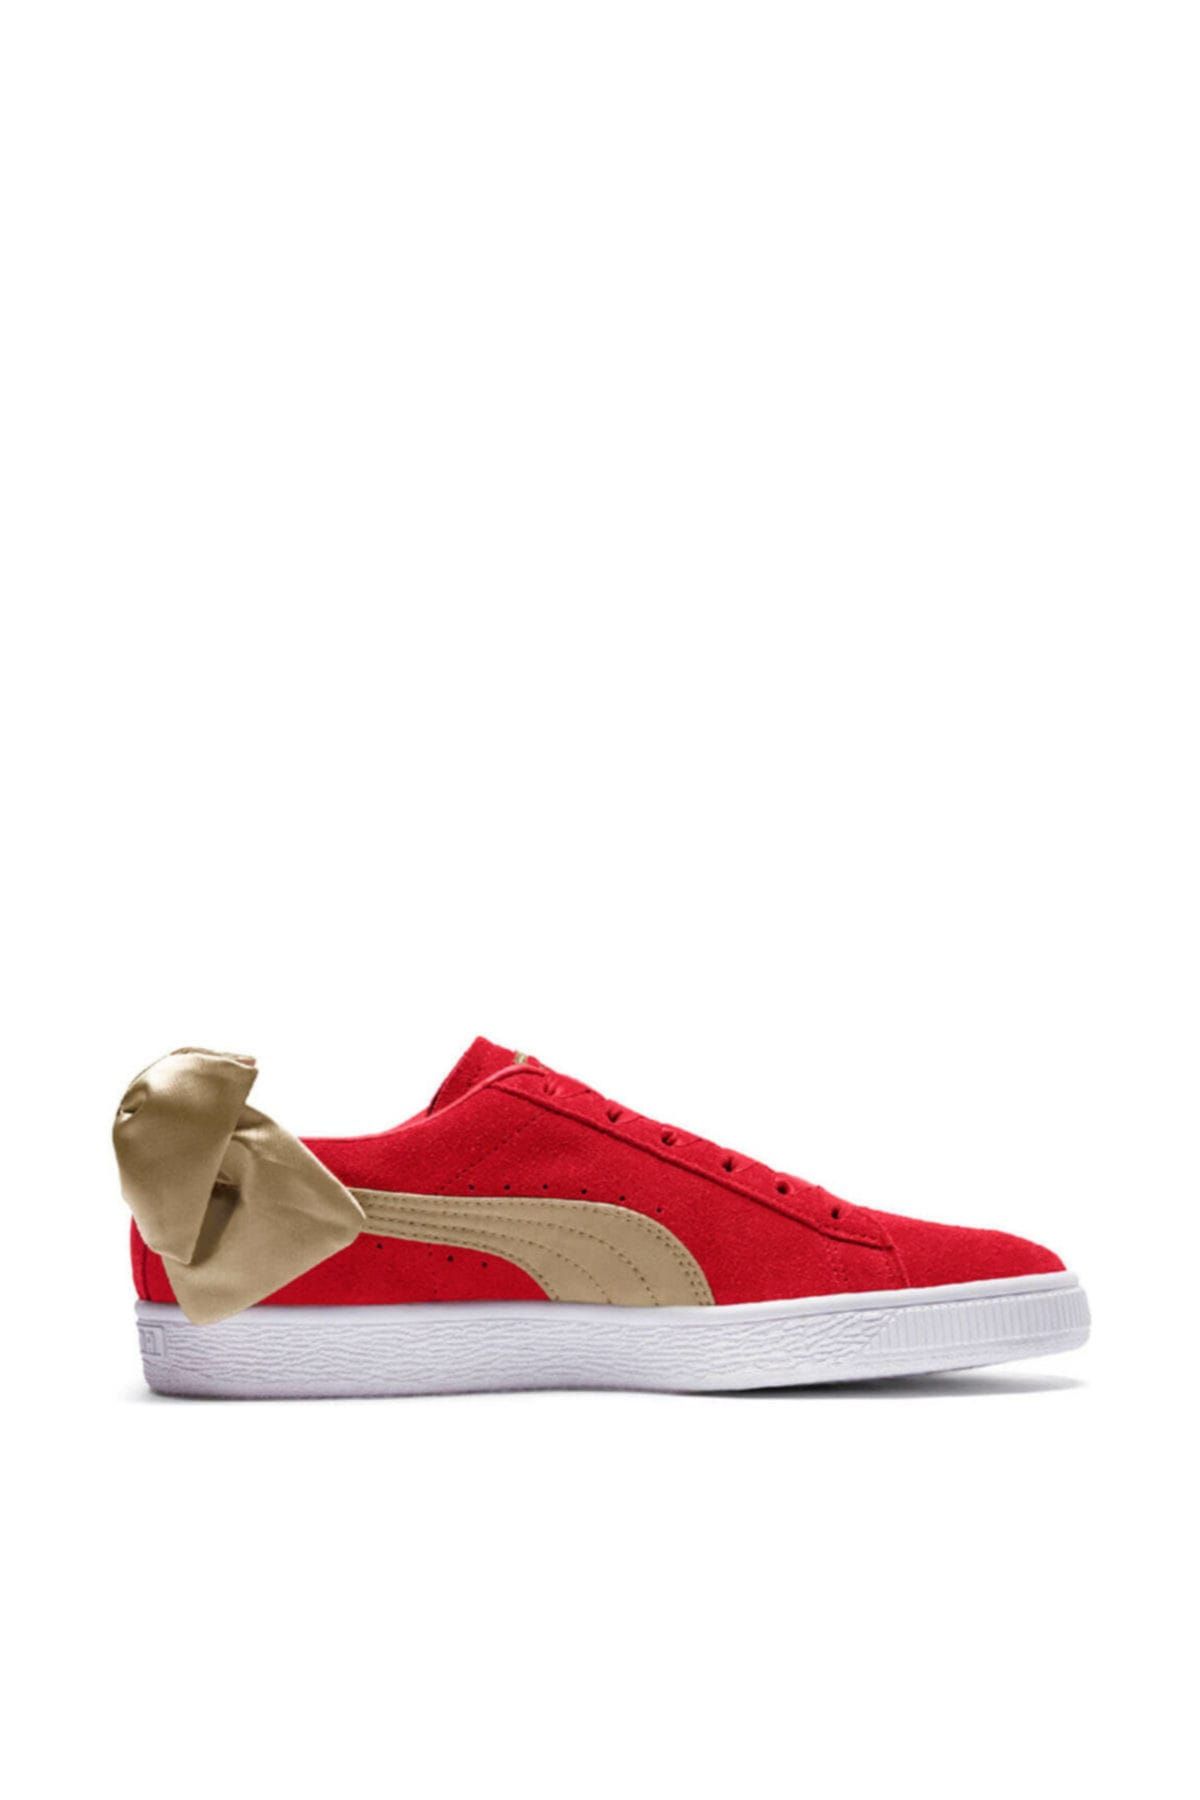 Puma SUEDE BOW VARSITY WN S Kırmızı Kadın Sneaker Ayakkabı 100462643